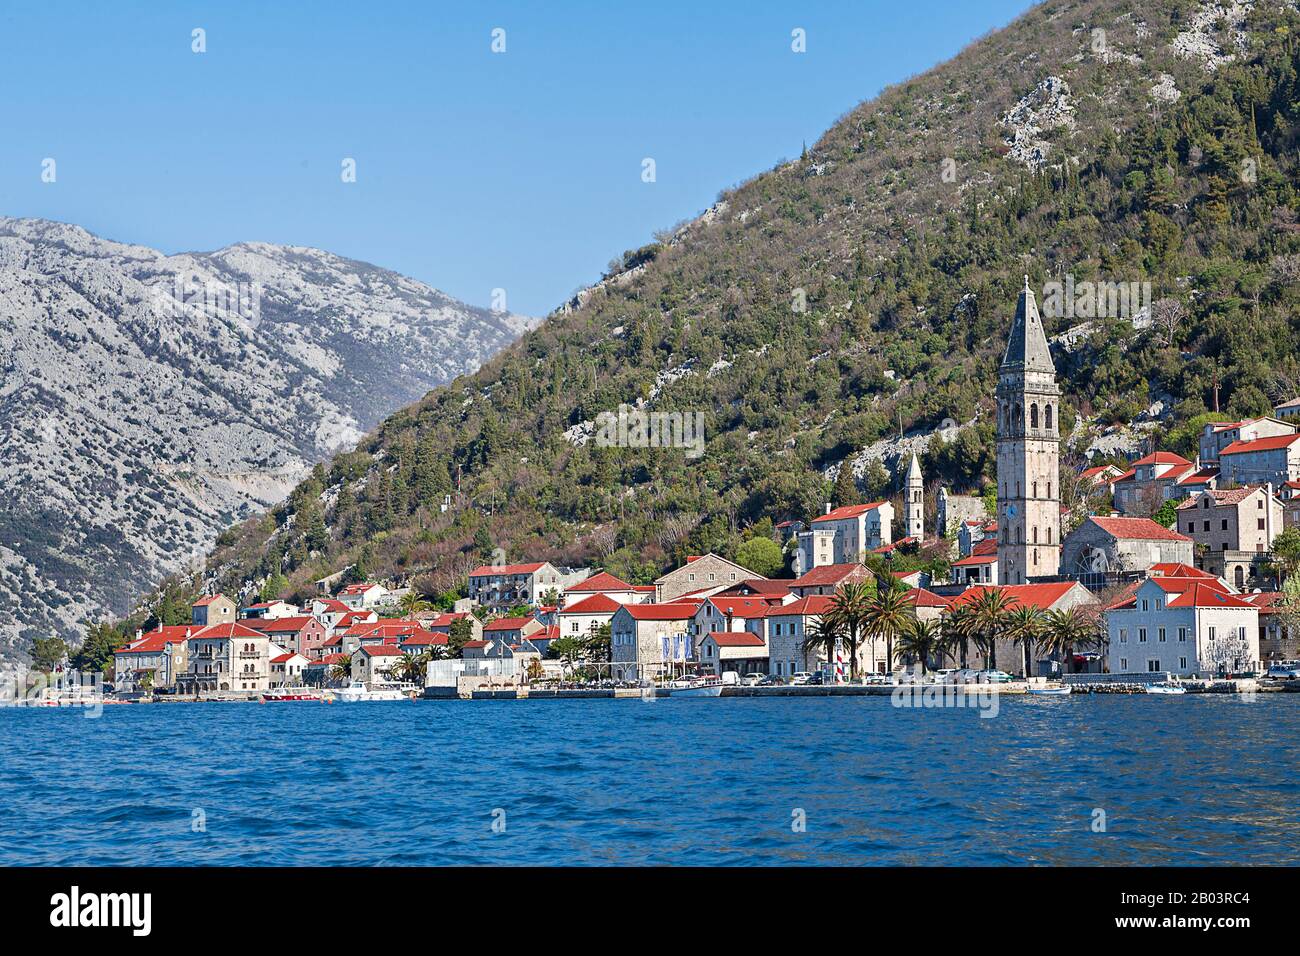 Vista su Perast, piccola città lungo il mare Adriatico, nella baia di Cattaro, Montenegro Foto Stock